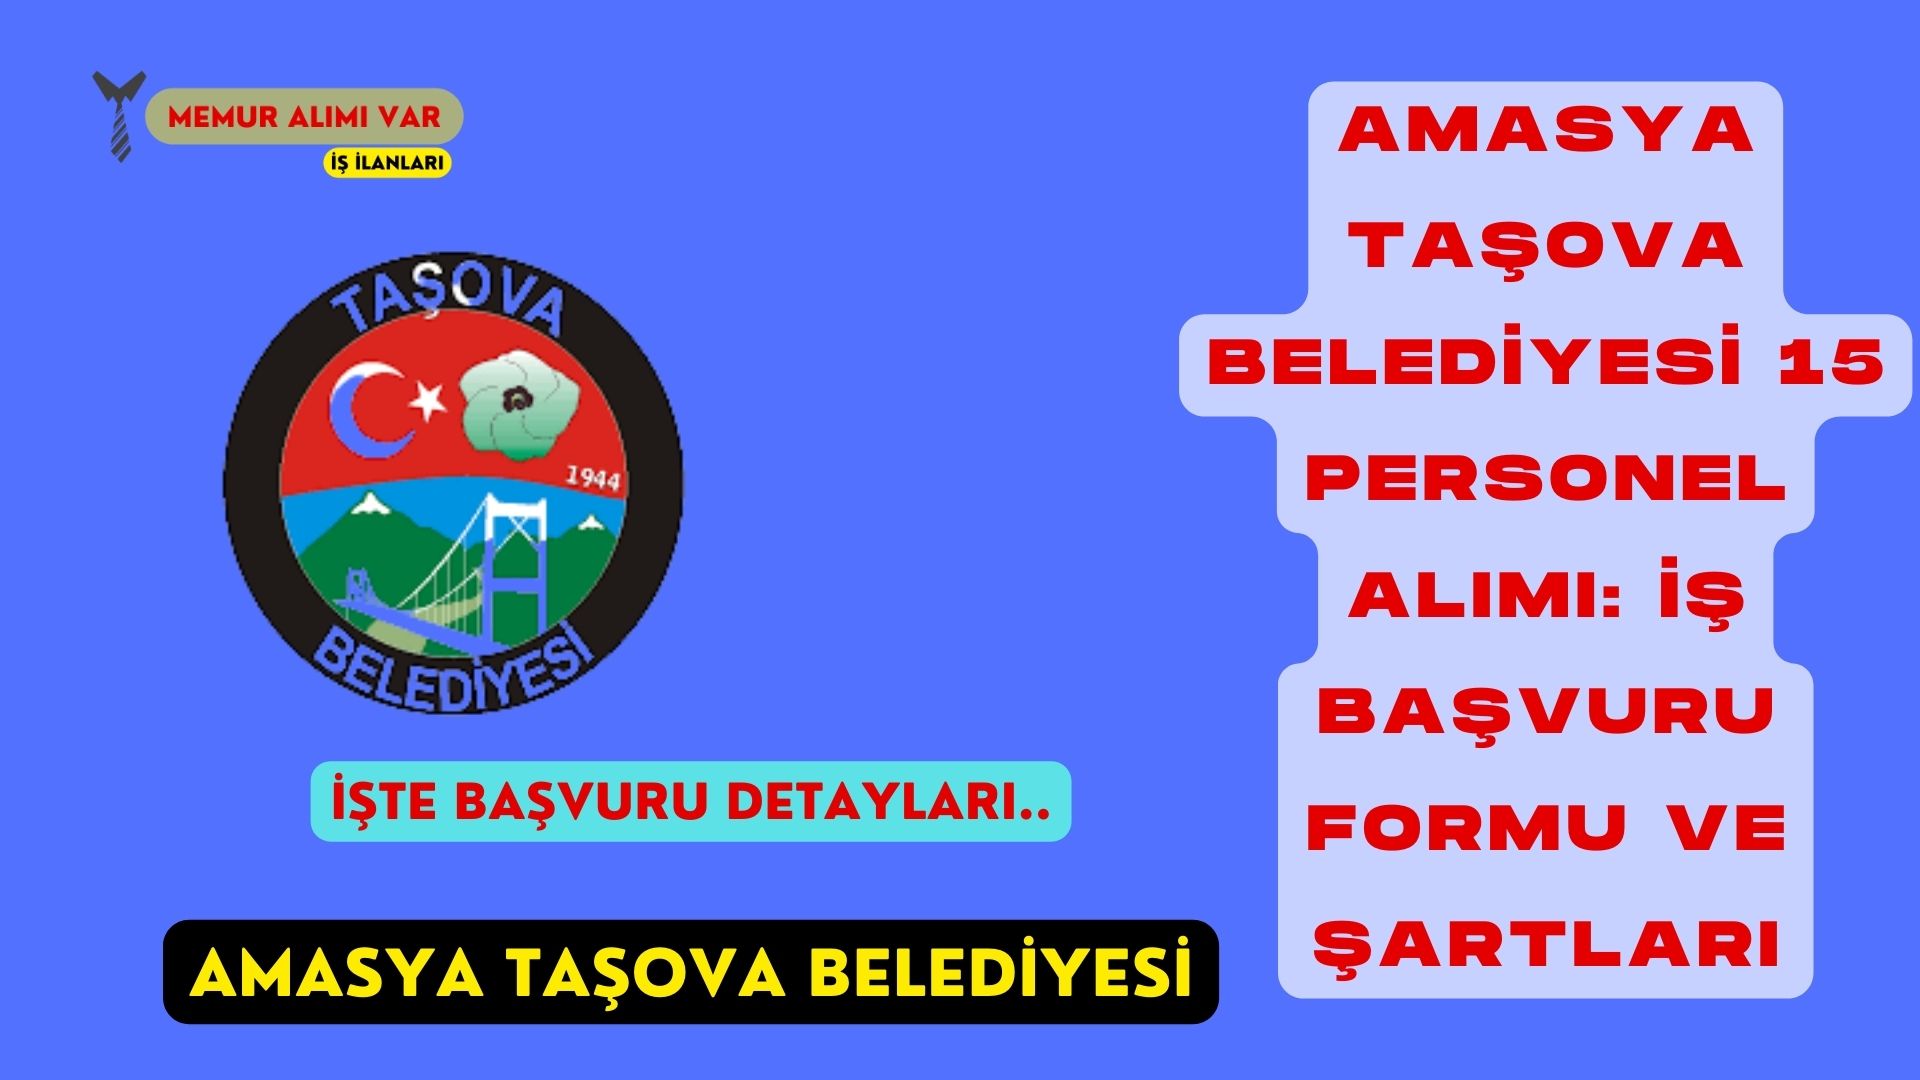 Amasya Taşova Belediyesi 15 Personel Alımı: İş Başvuru Formu ve Şartları